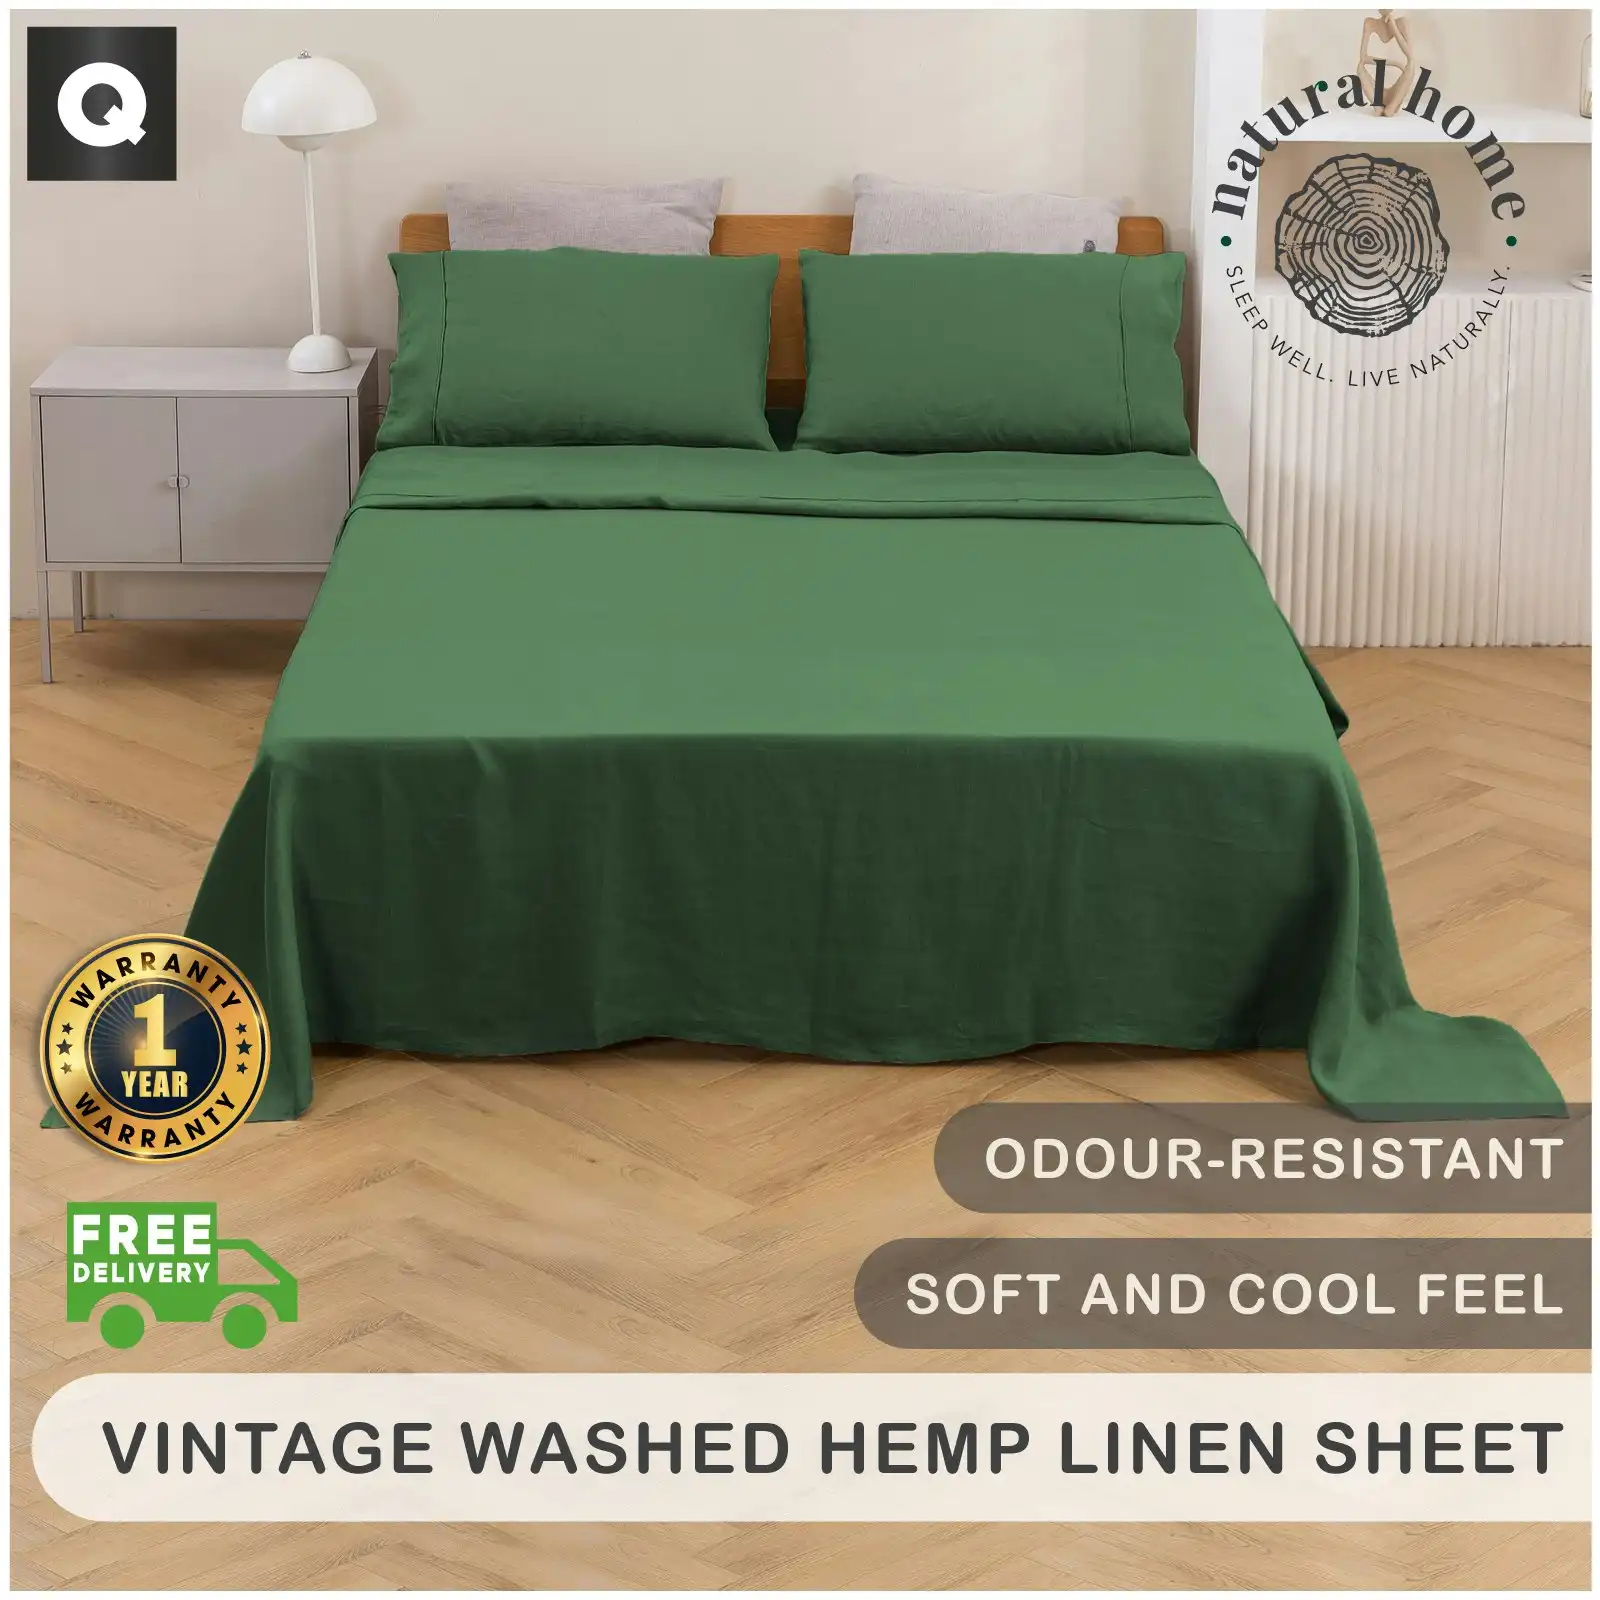 Natural Home Vintage Washed Hemp Linen Sheet Set Eden Queen Bed